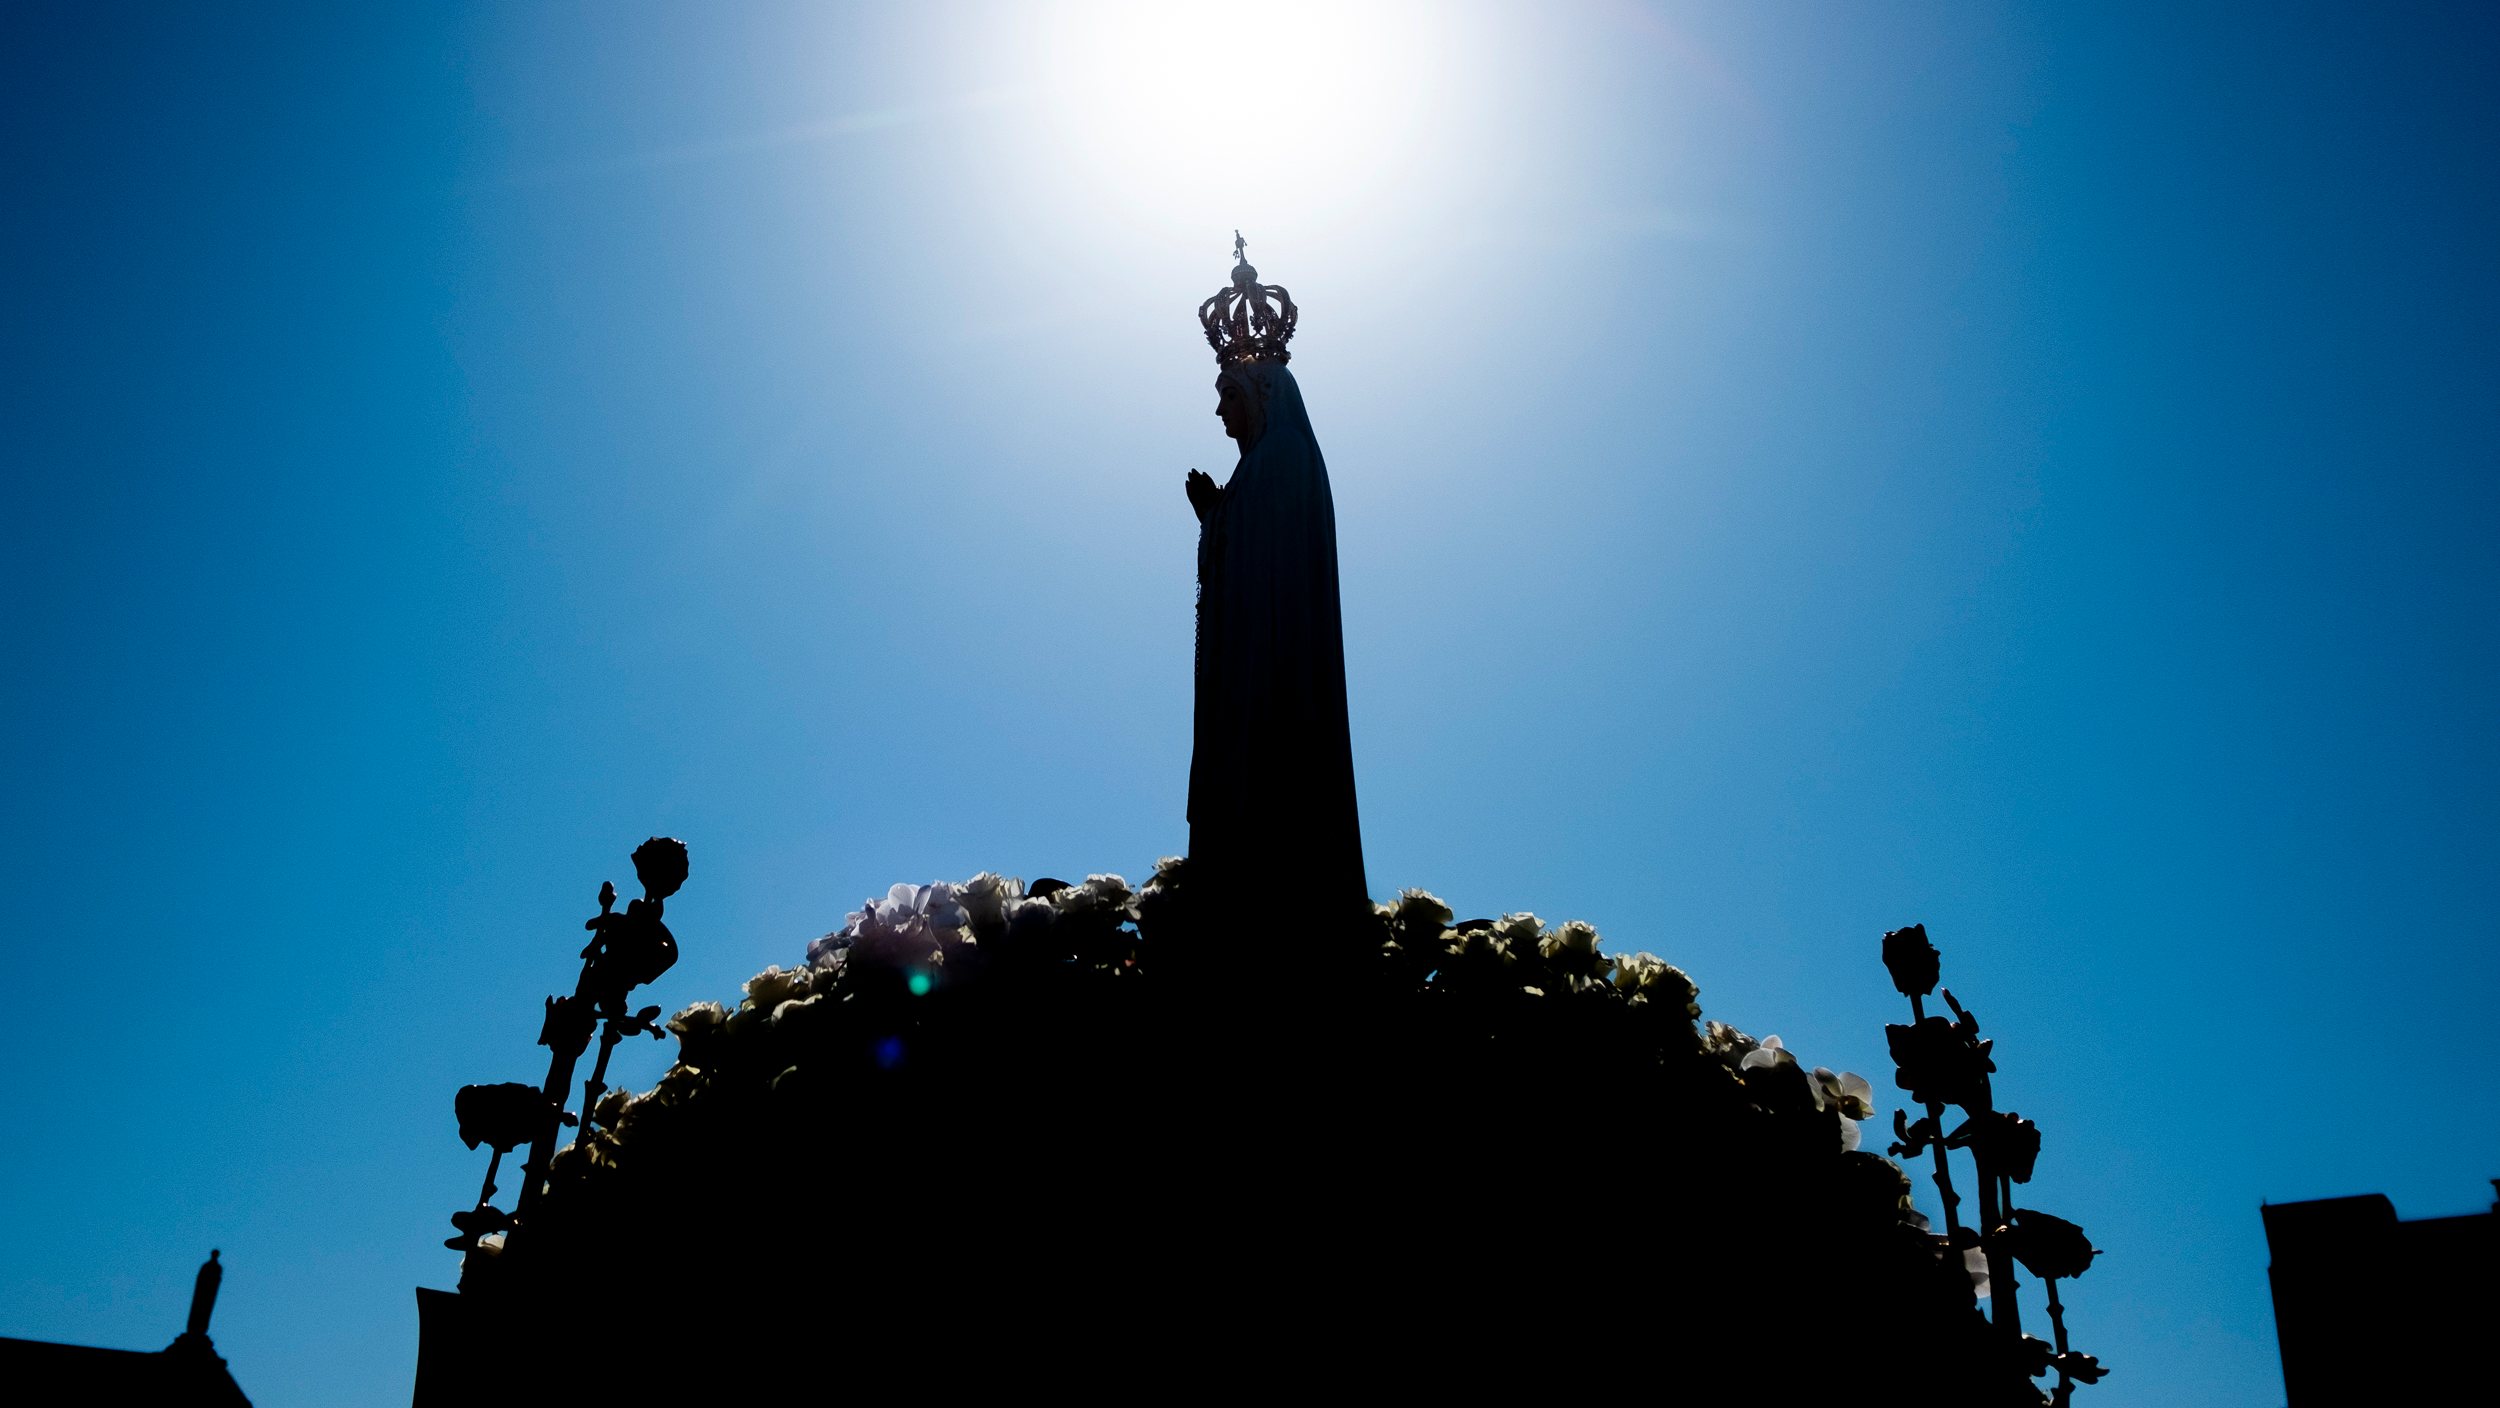 Milhares de fiéis são esperados no Santuário de Fátima para a peregrinação aniversária de outubro, nos dias 12 e 13, presidida pelo bispo da diocese de Leiria-Fátima, José Ornelas